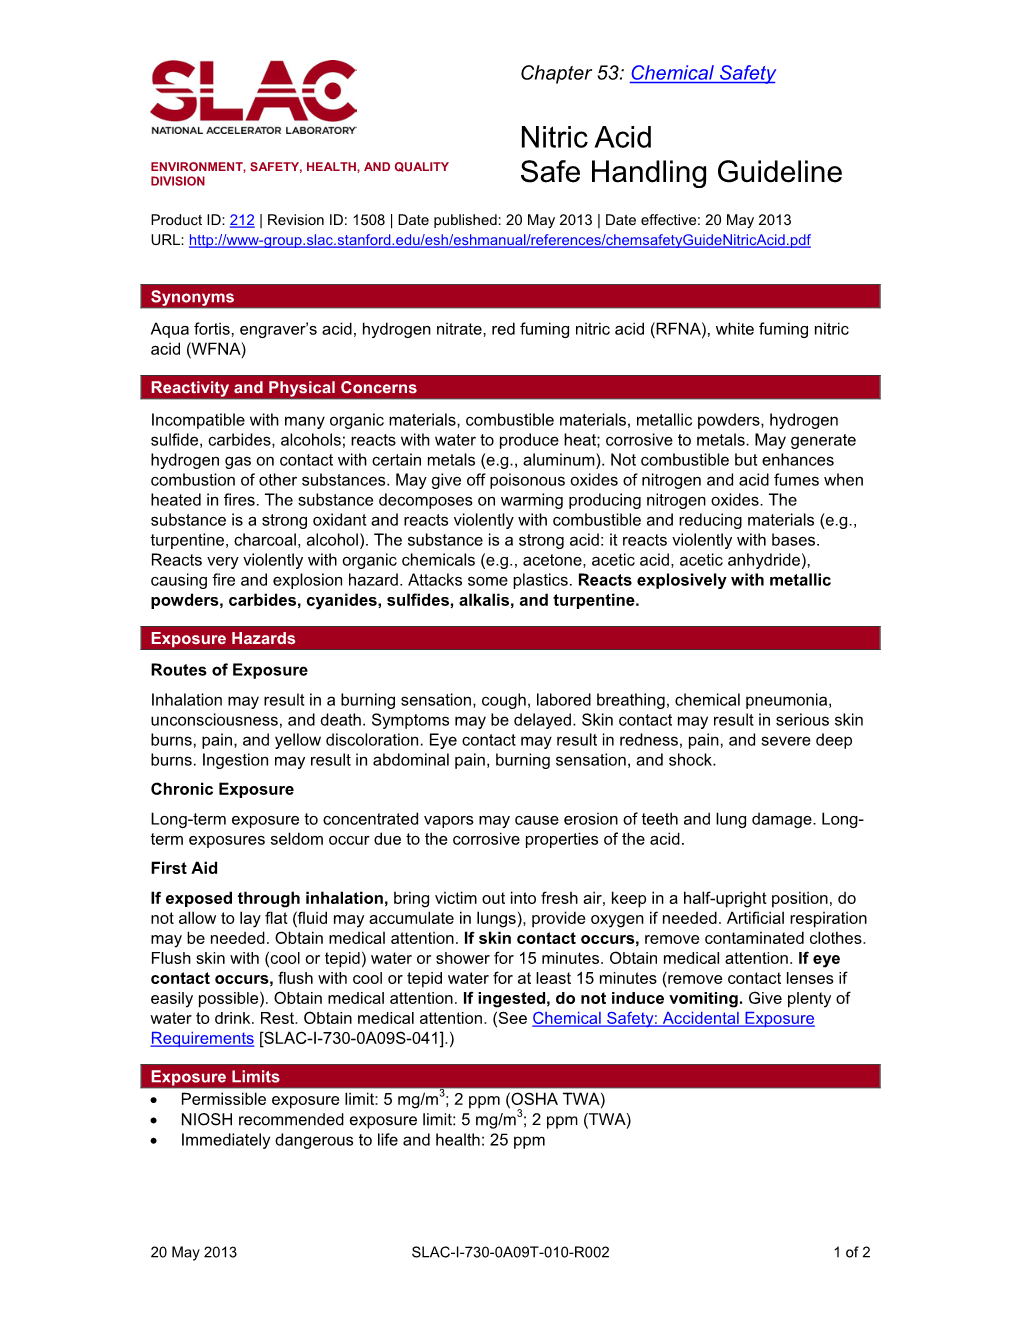 Nitric Acid Safe Handling Guideline